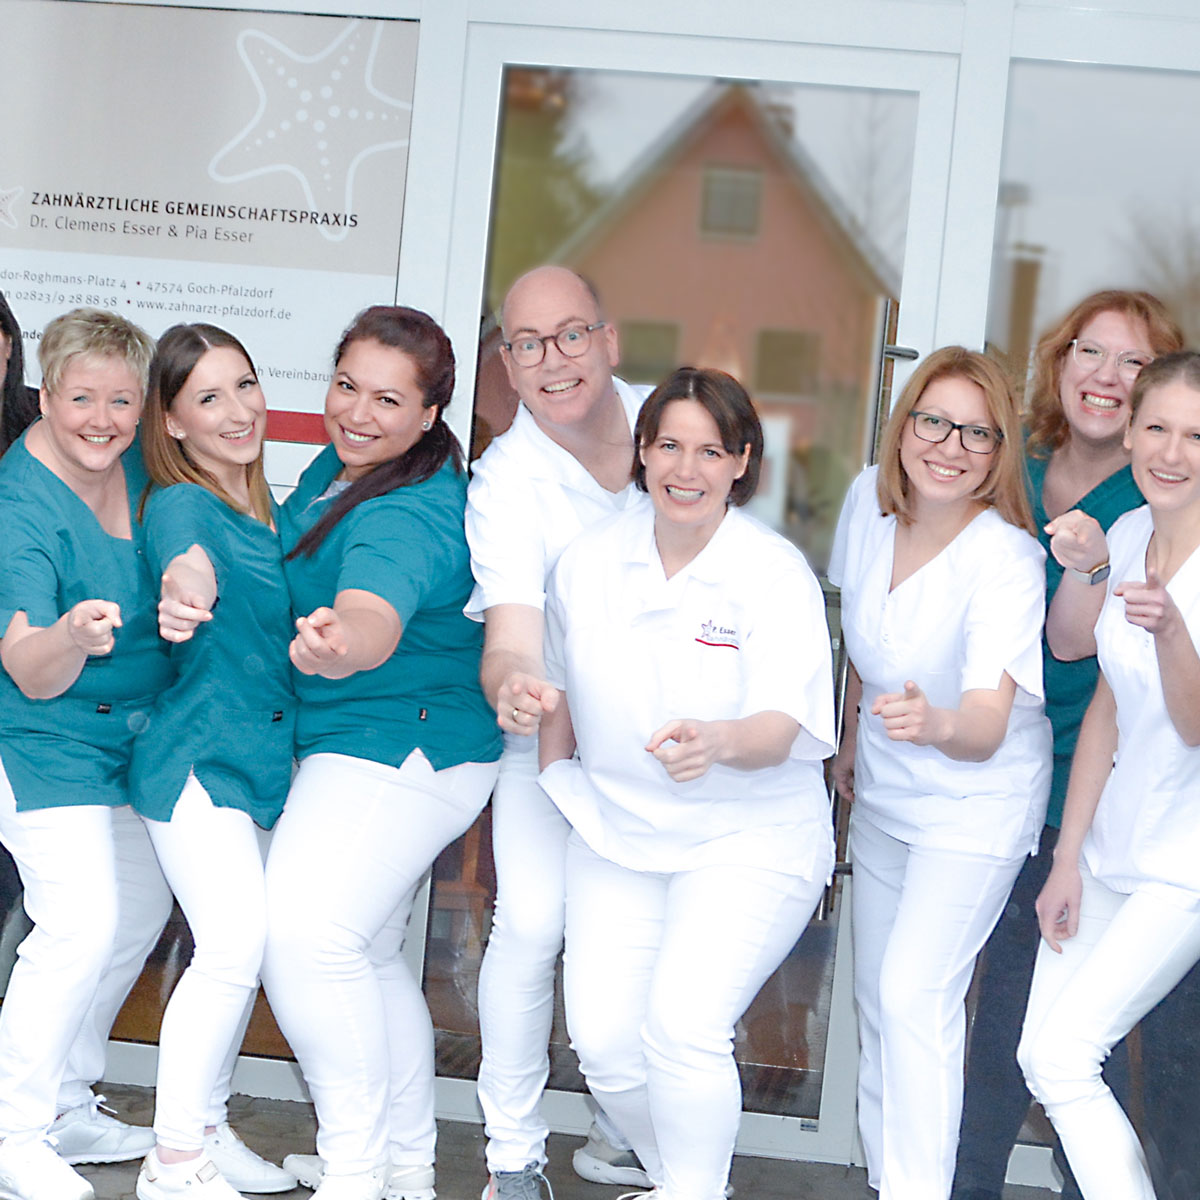 Karriere Stellenangebote in Zahnarztpraxis am Niederrhein